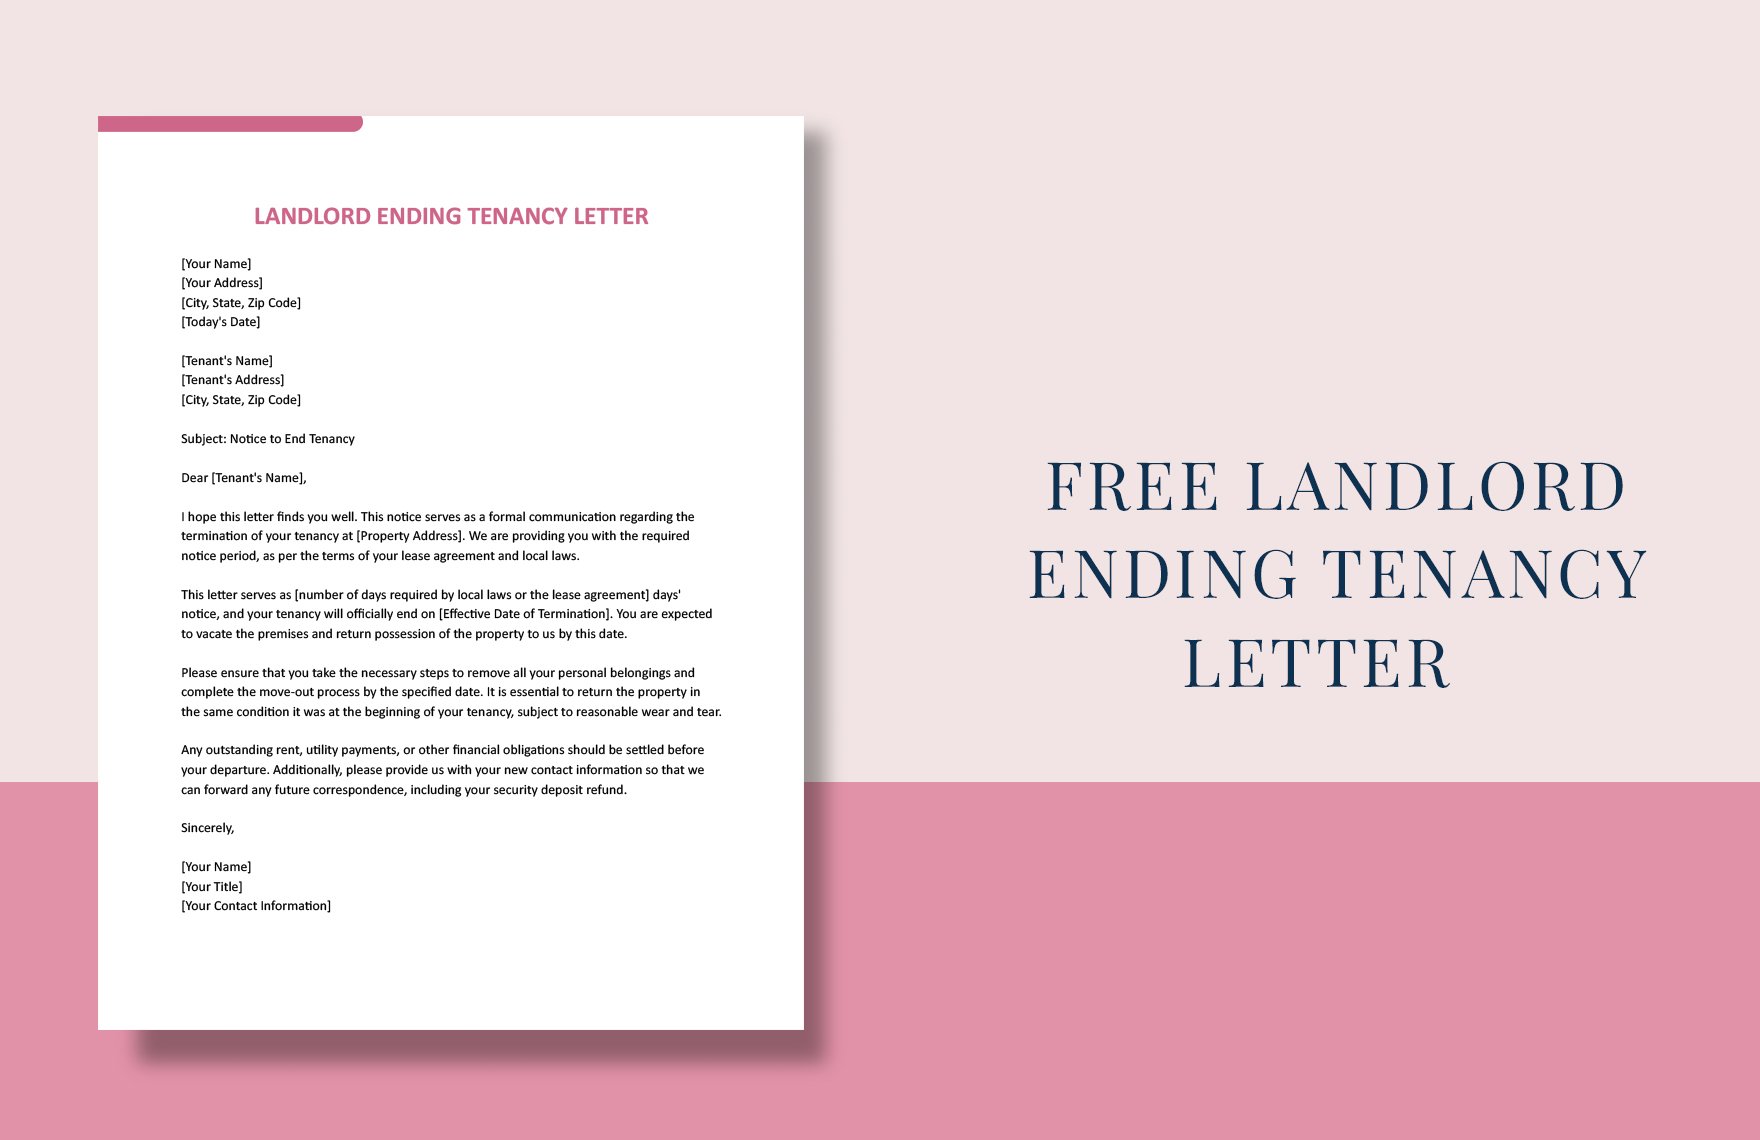 Landlord Ending Tenancy Letter